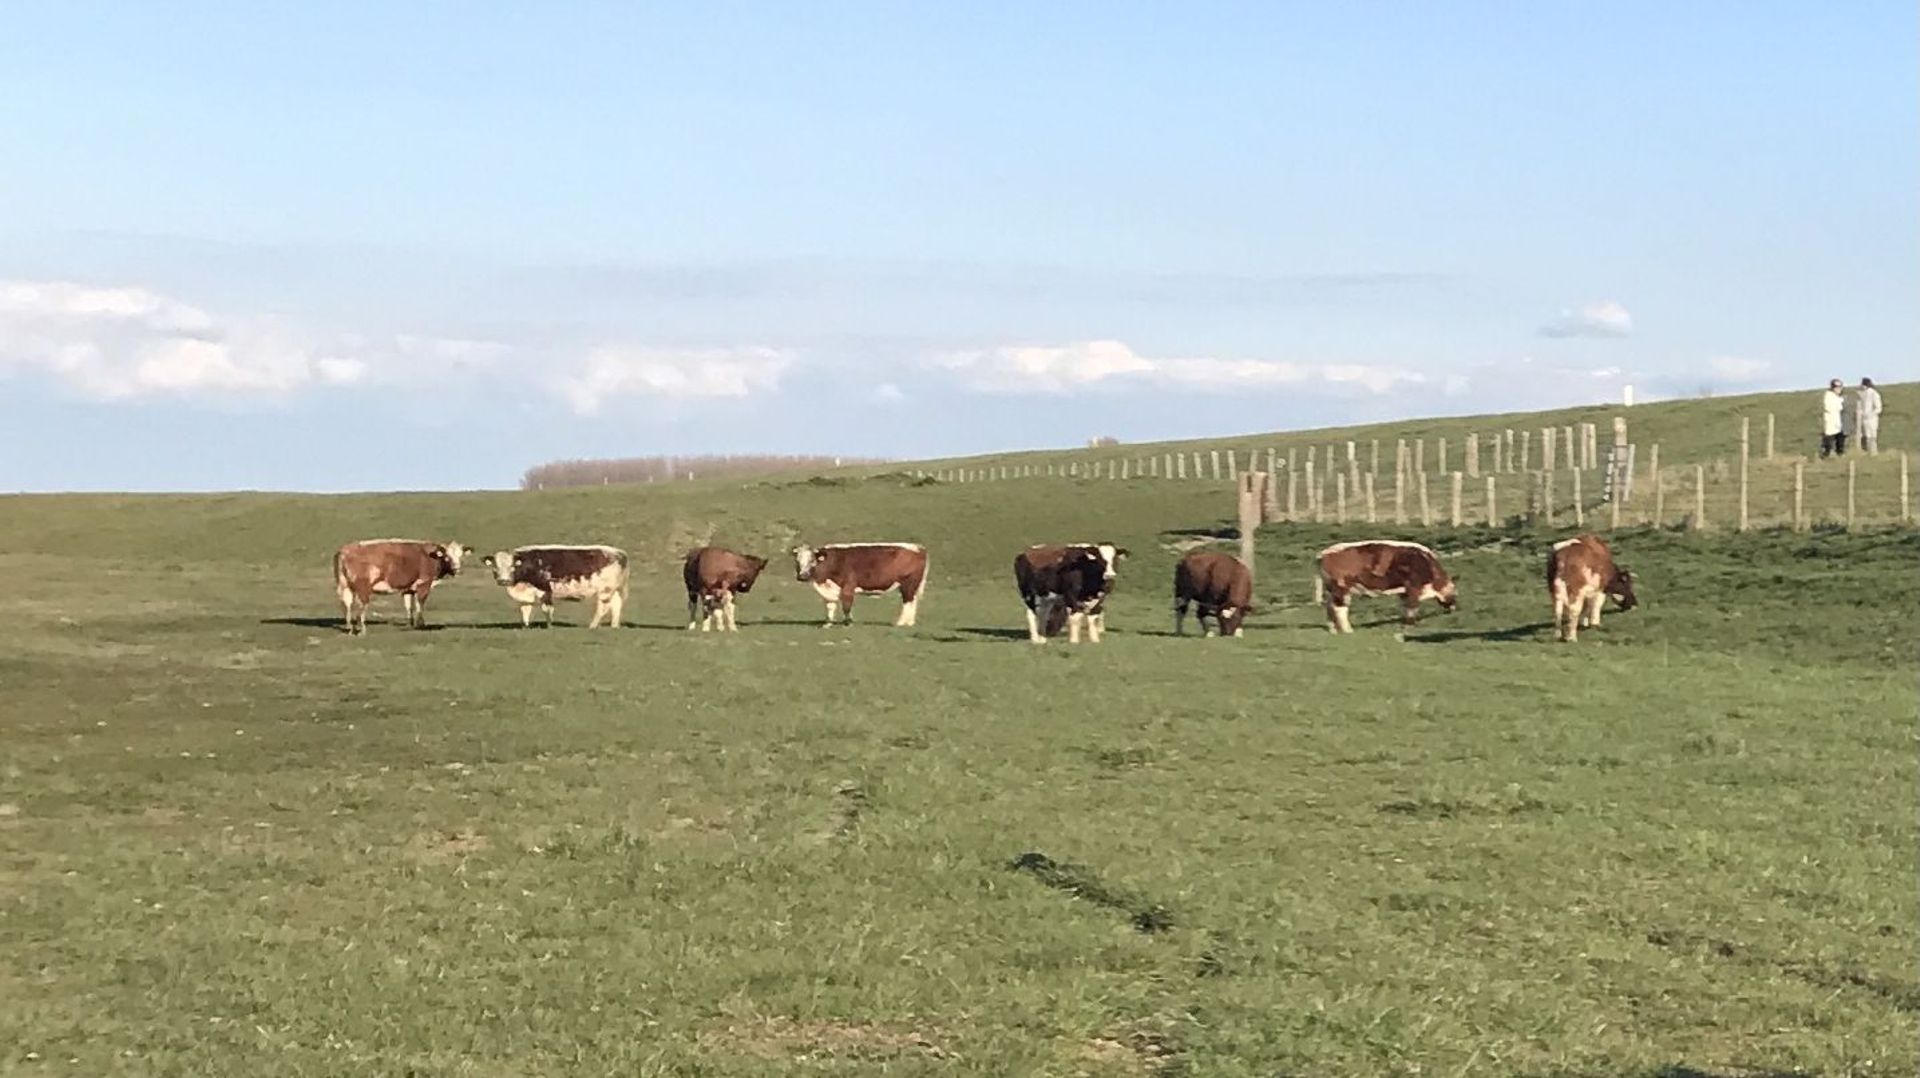 Les « Brouteurs de Zélande » environ 500 moutons et d’une centaine de vaches, tous originaires de la région qui mangent les herbes du littoral permettant ainsi un entretien 100% naturel de la zone.